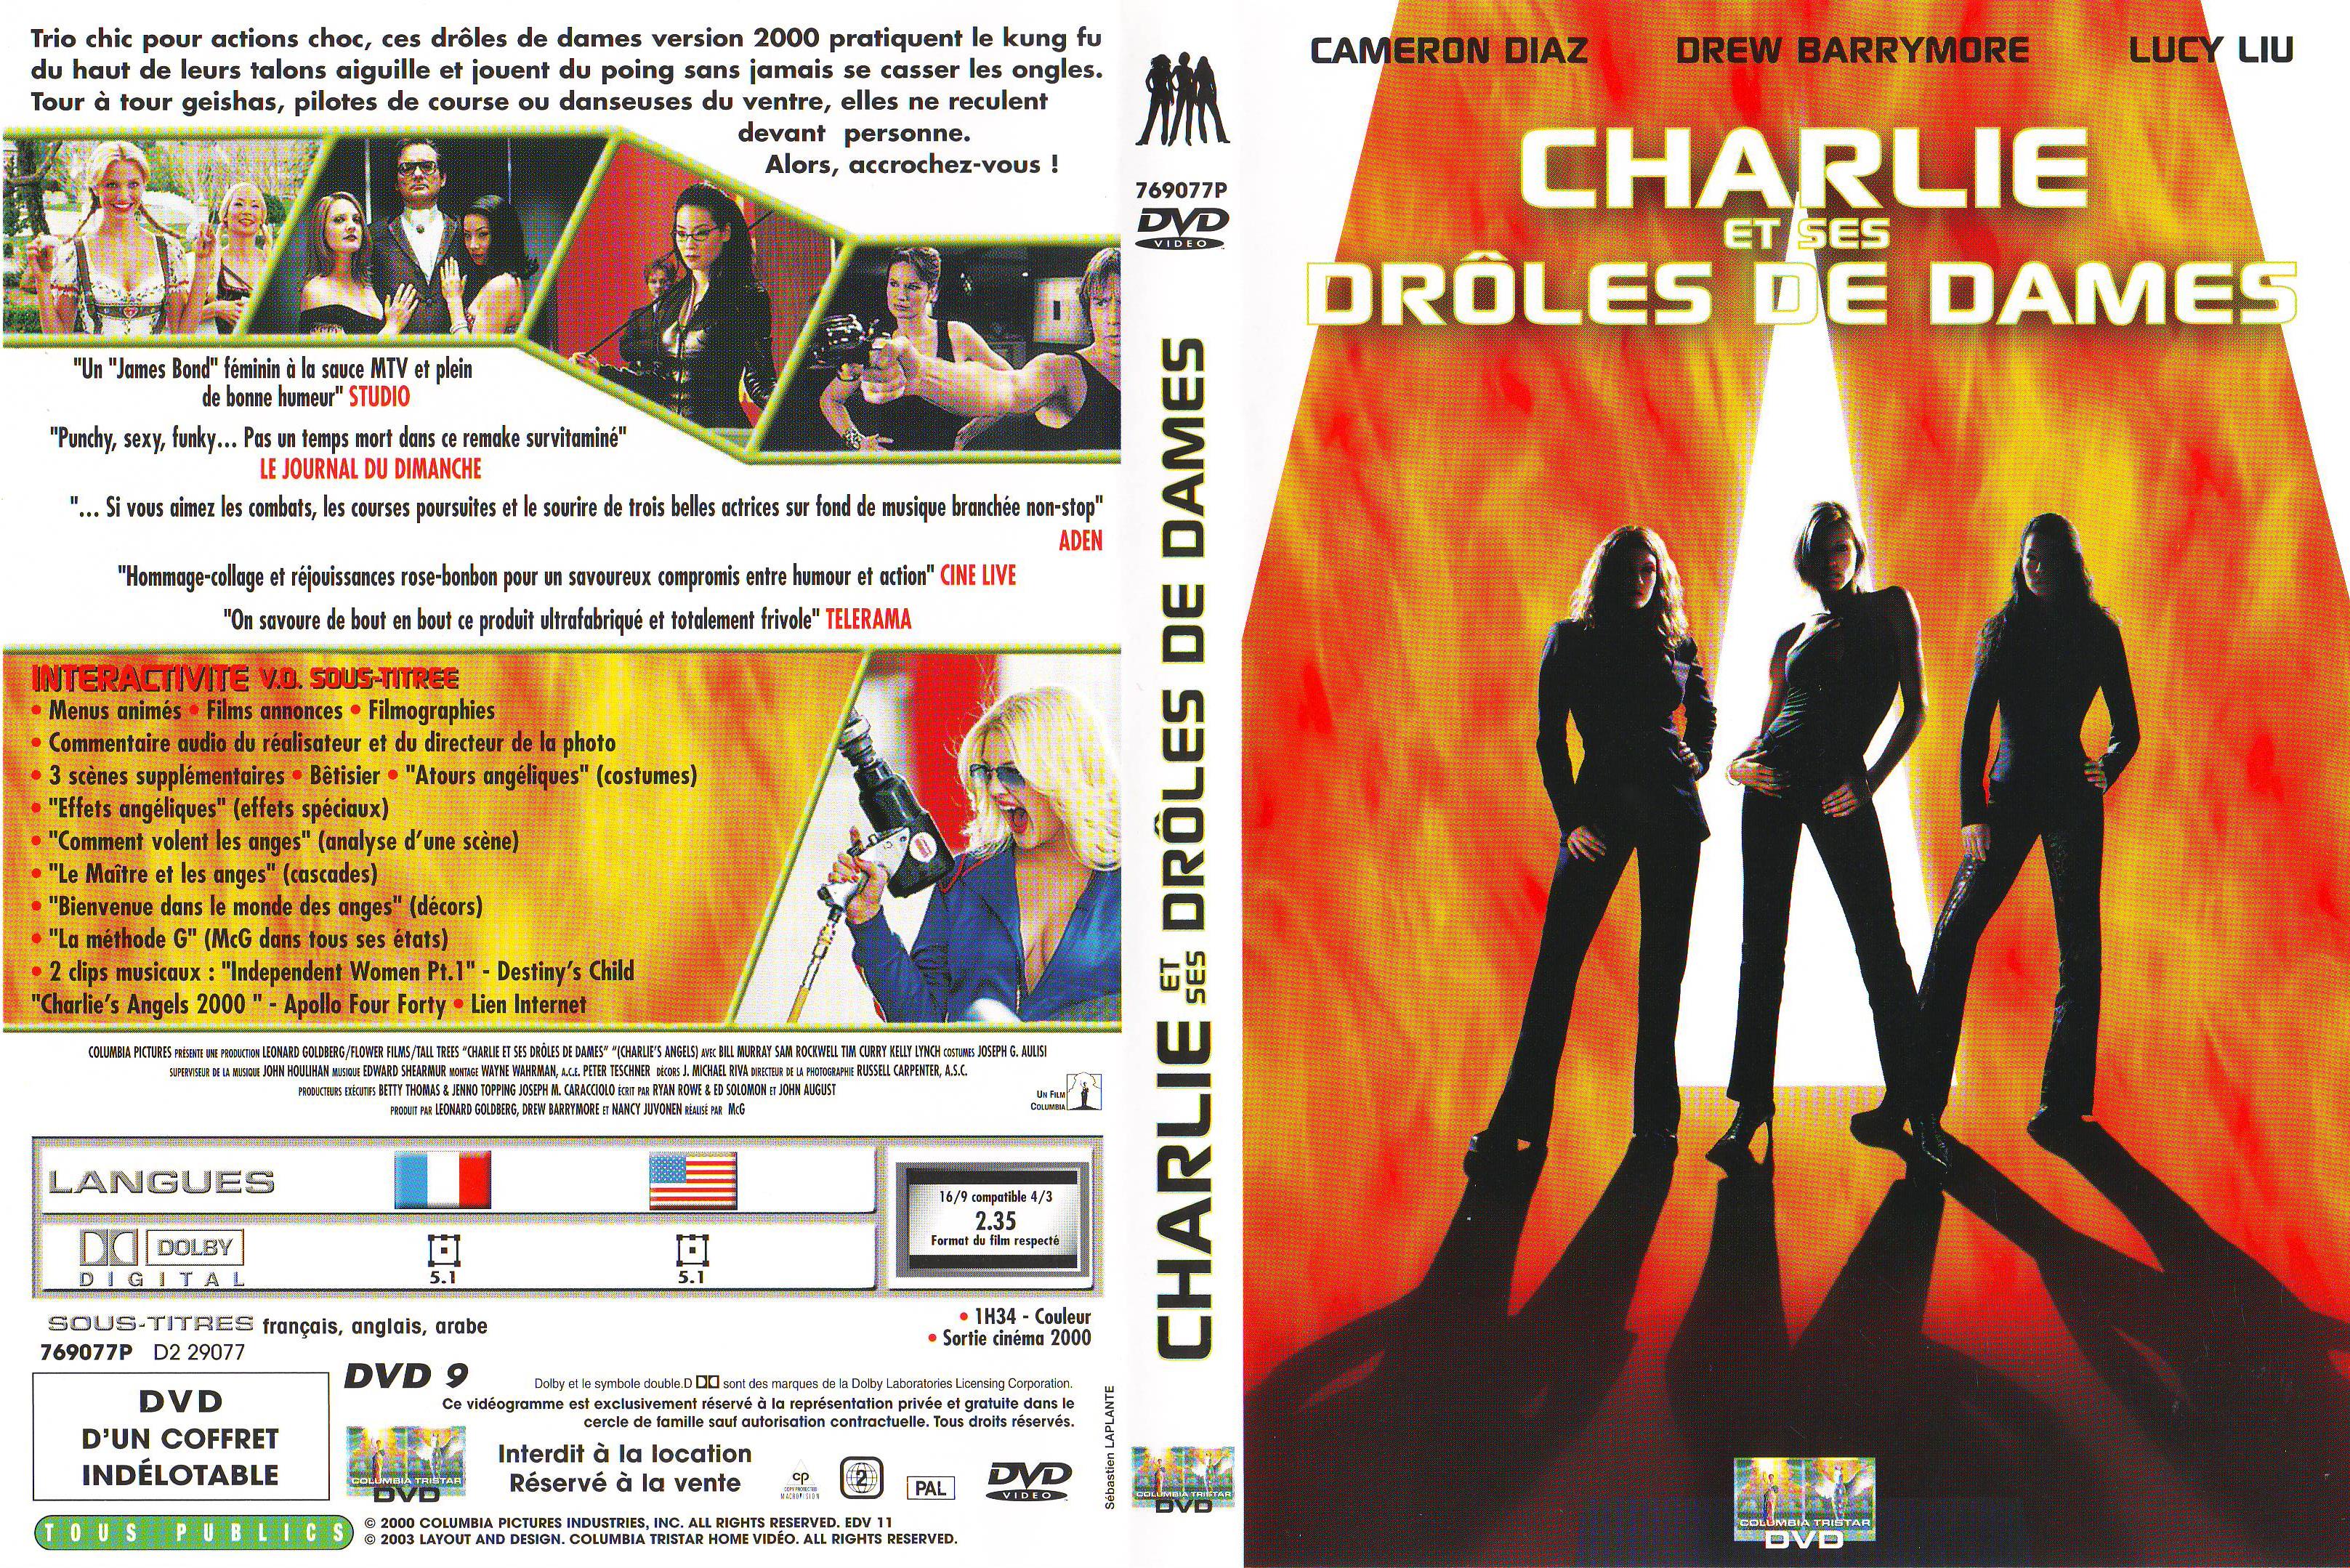 Jaquette DVD Charlie et ses droles de dames v3